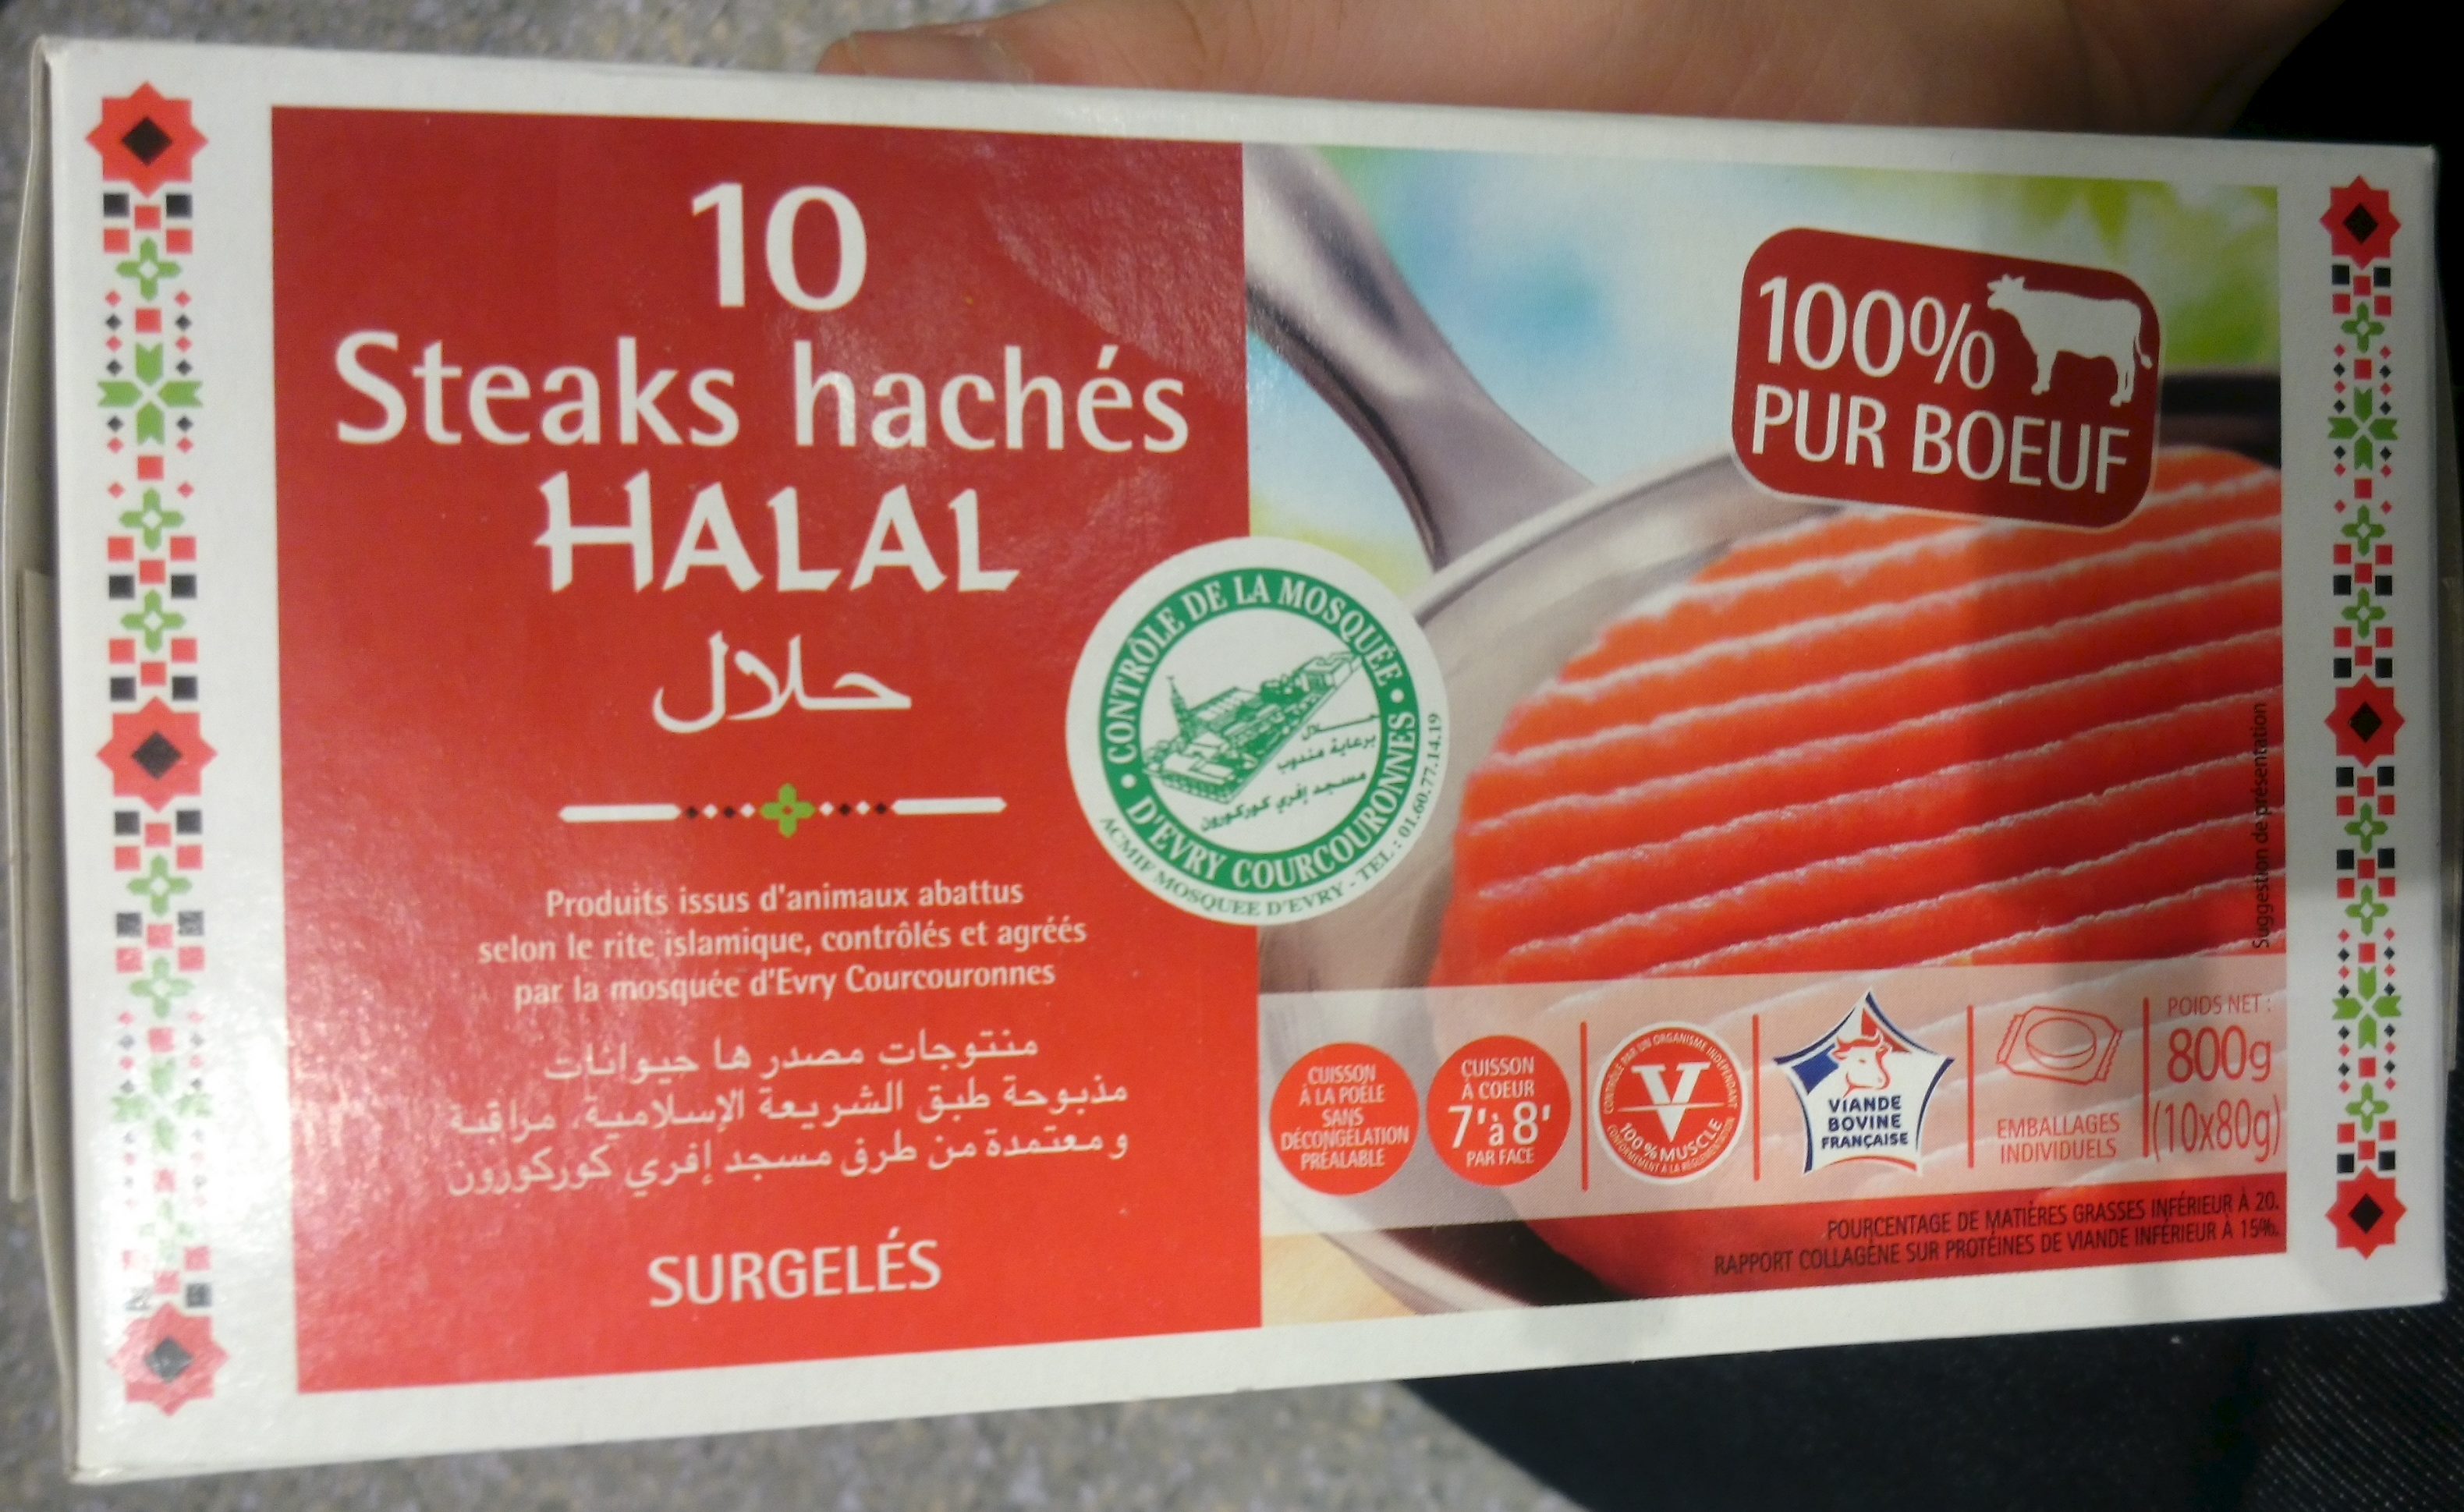 10 steaks hachés halal - Product - fr